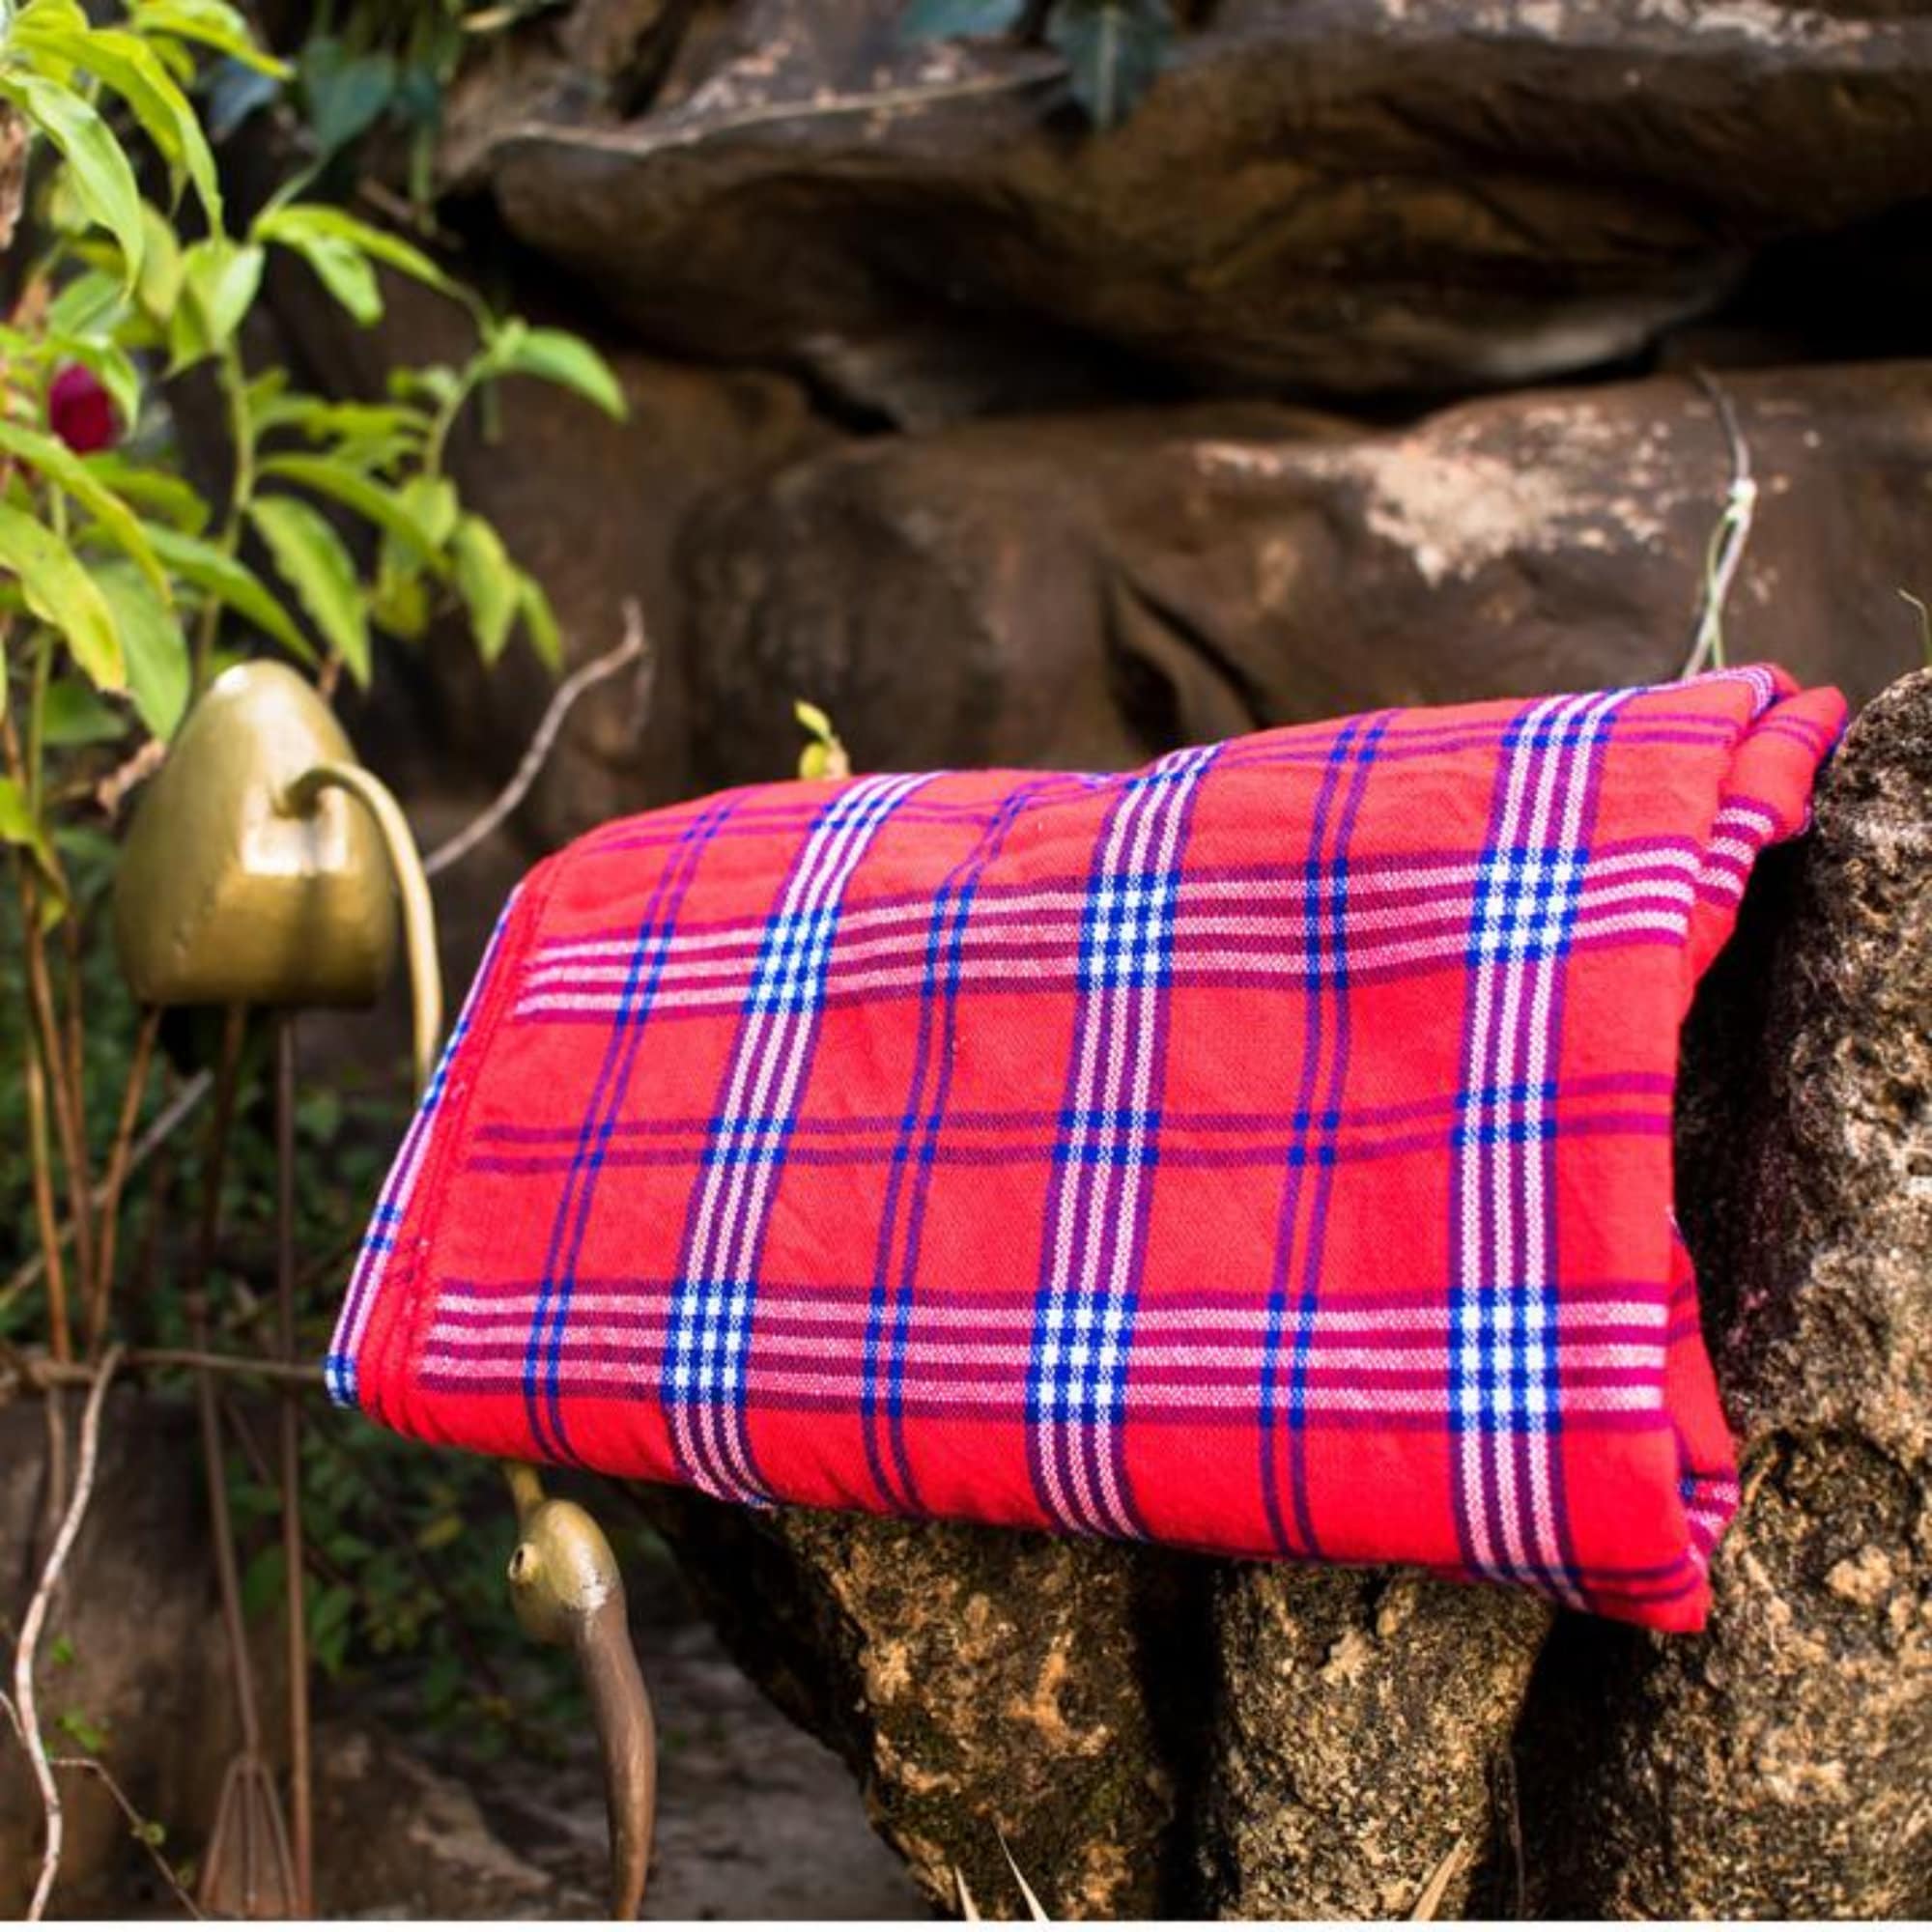 Masaai Pride - Red Masai Shuka - Easy to wash - Quick to